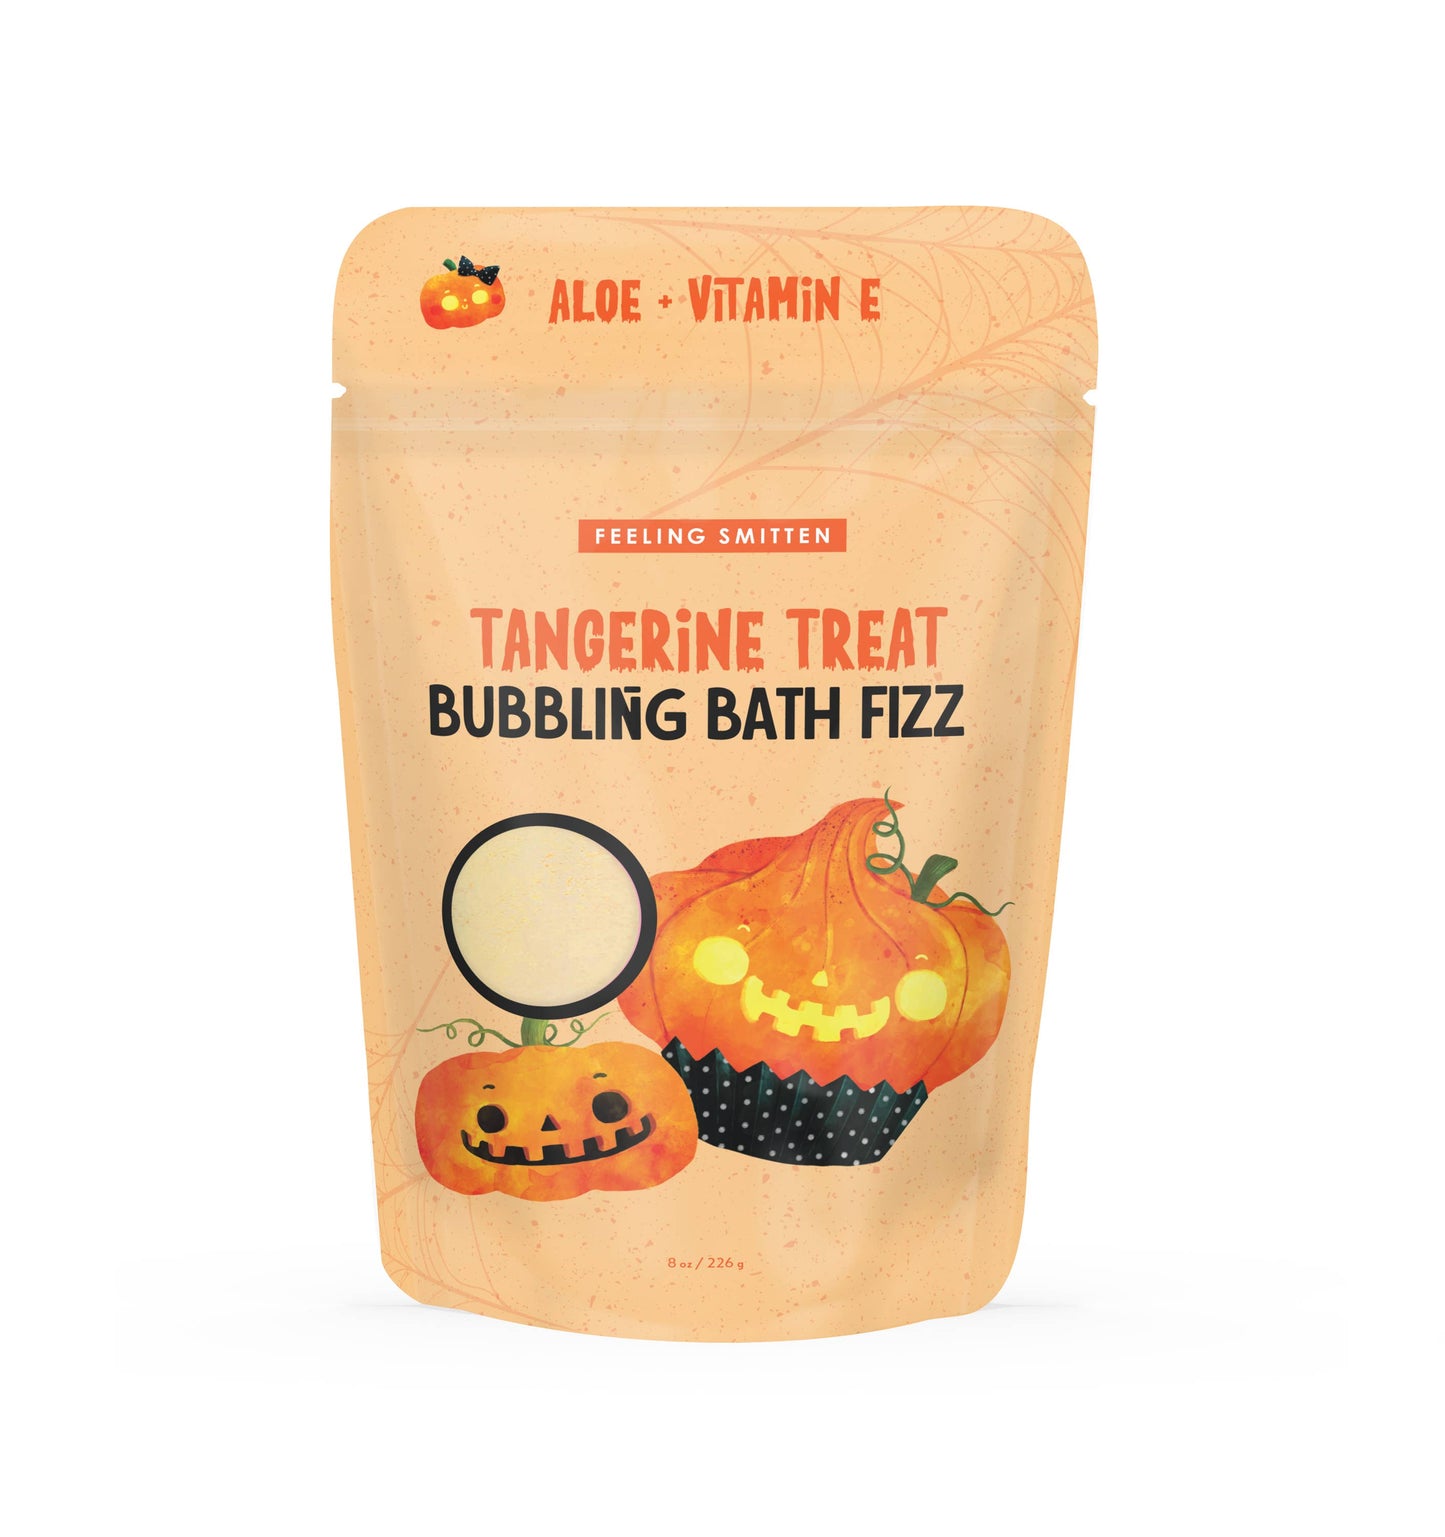 Feeling Smitten - Tangerine Treat Bubbling Bath Fizz